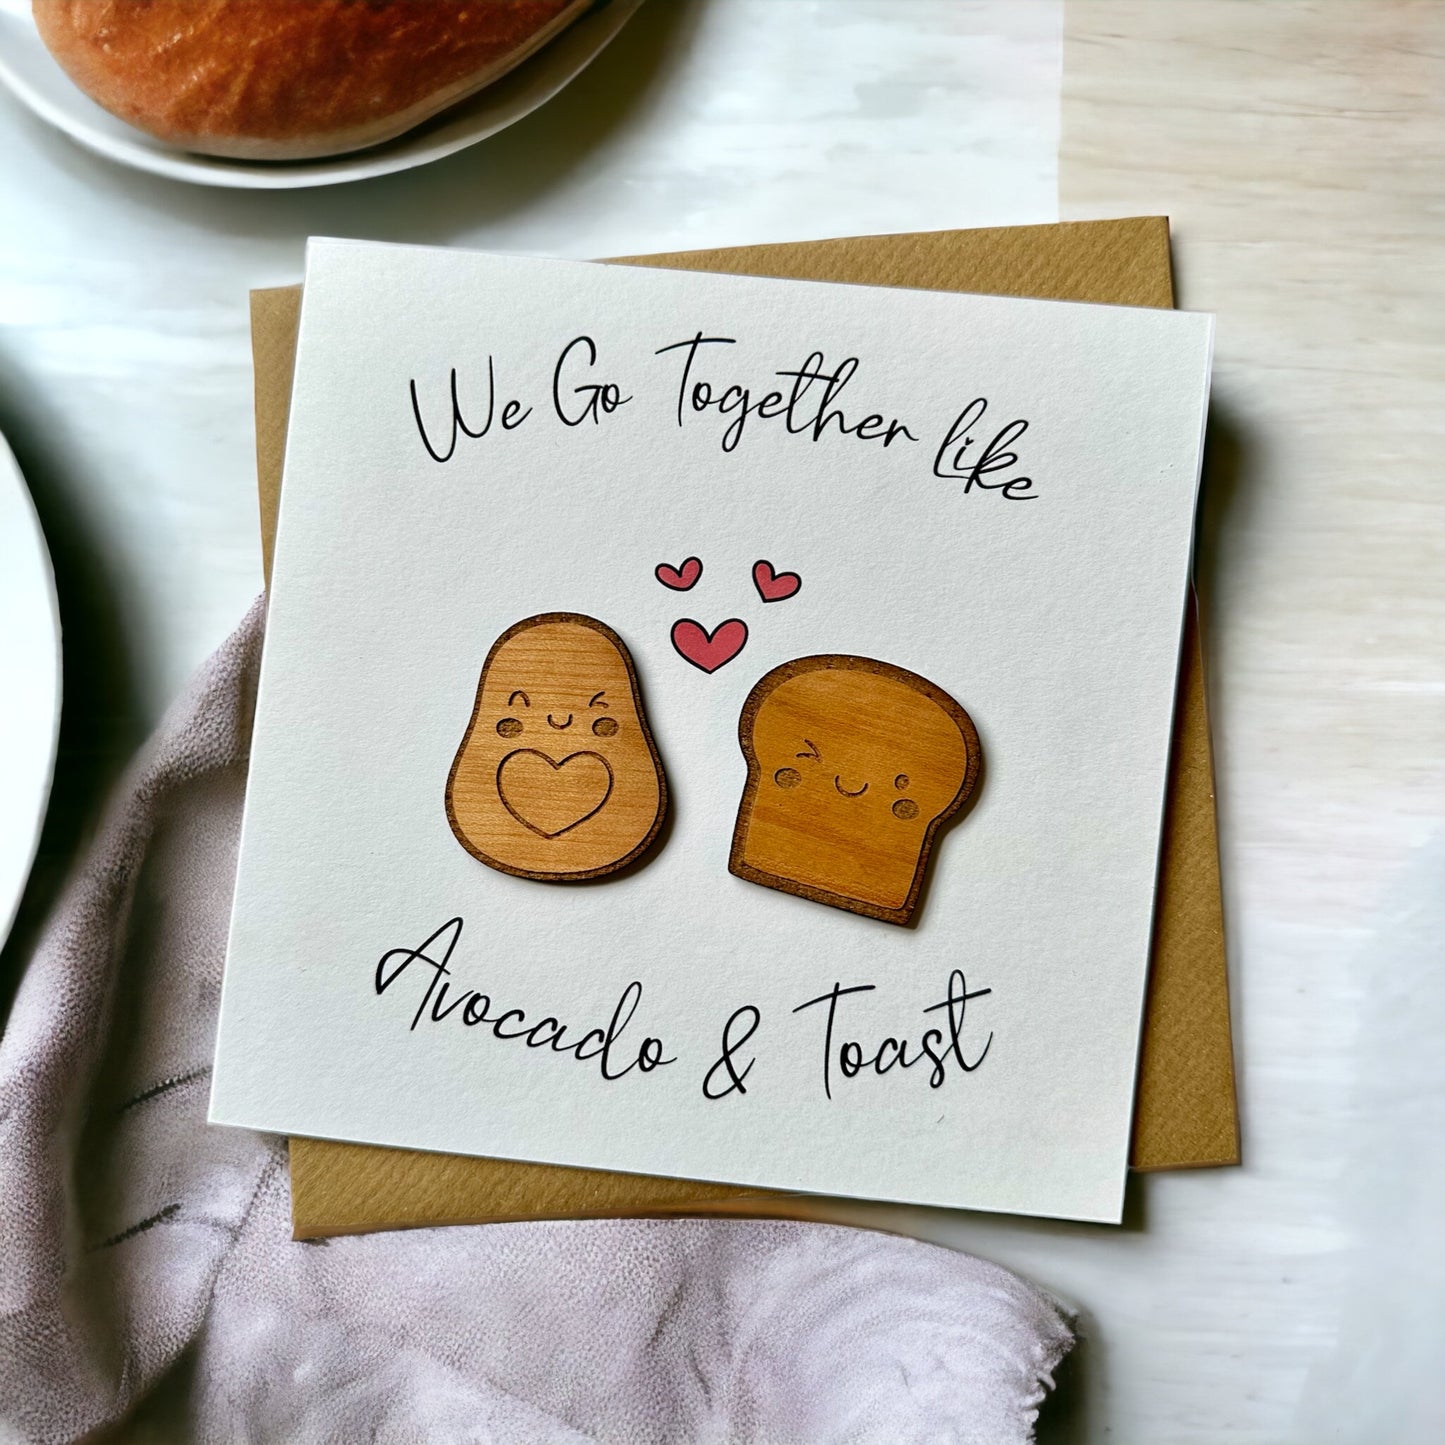 We Go Together Like Avocado & Toast Card